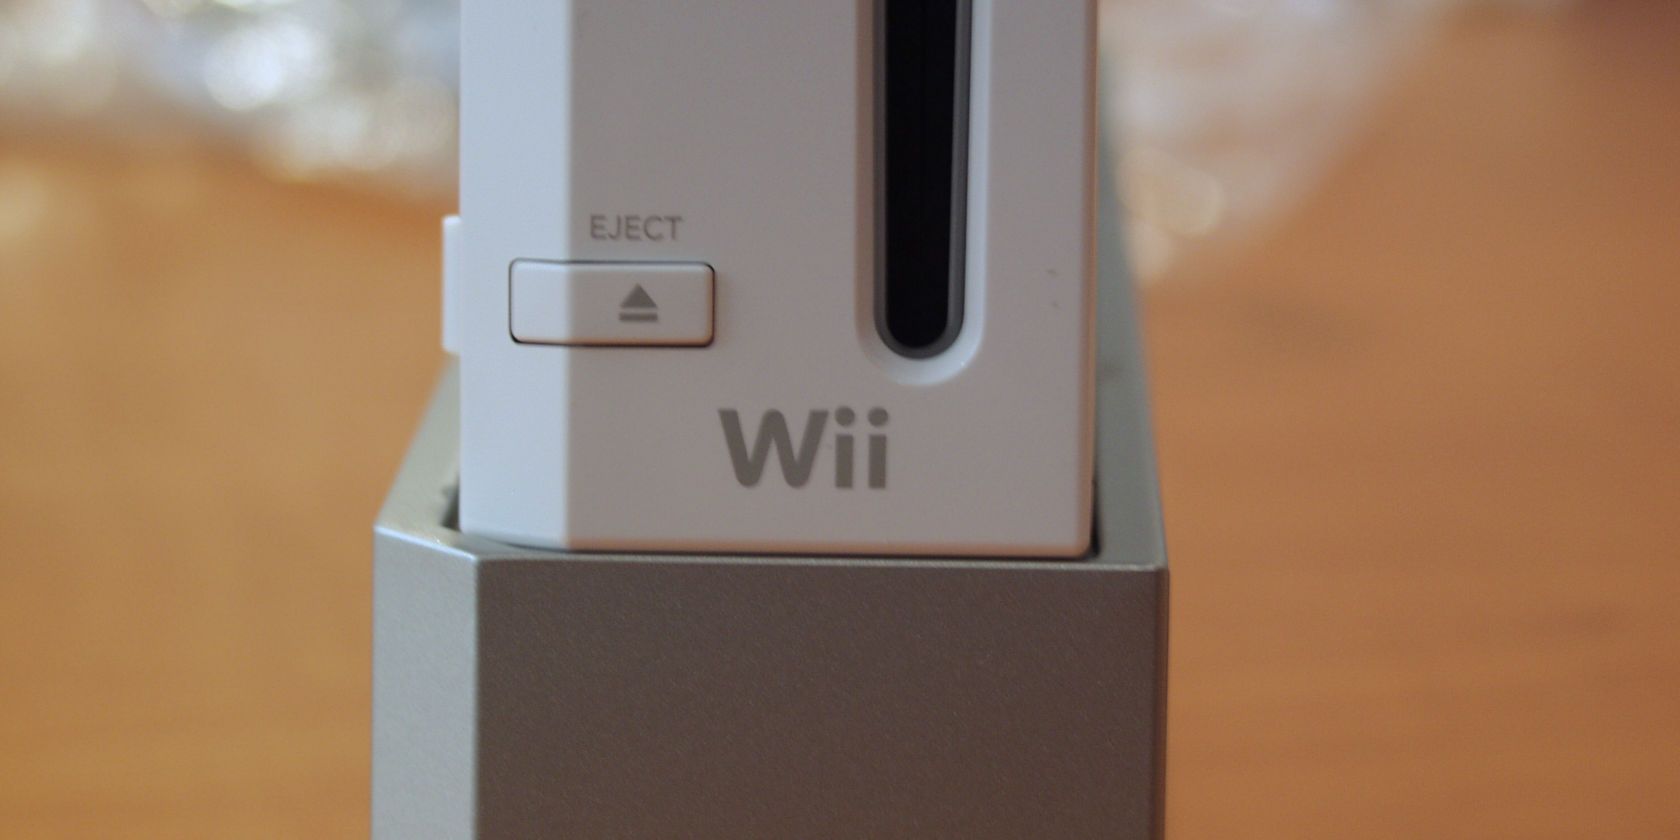 Wii не подключается к WiFi? Вот простое решение проблемы